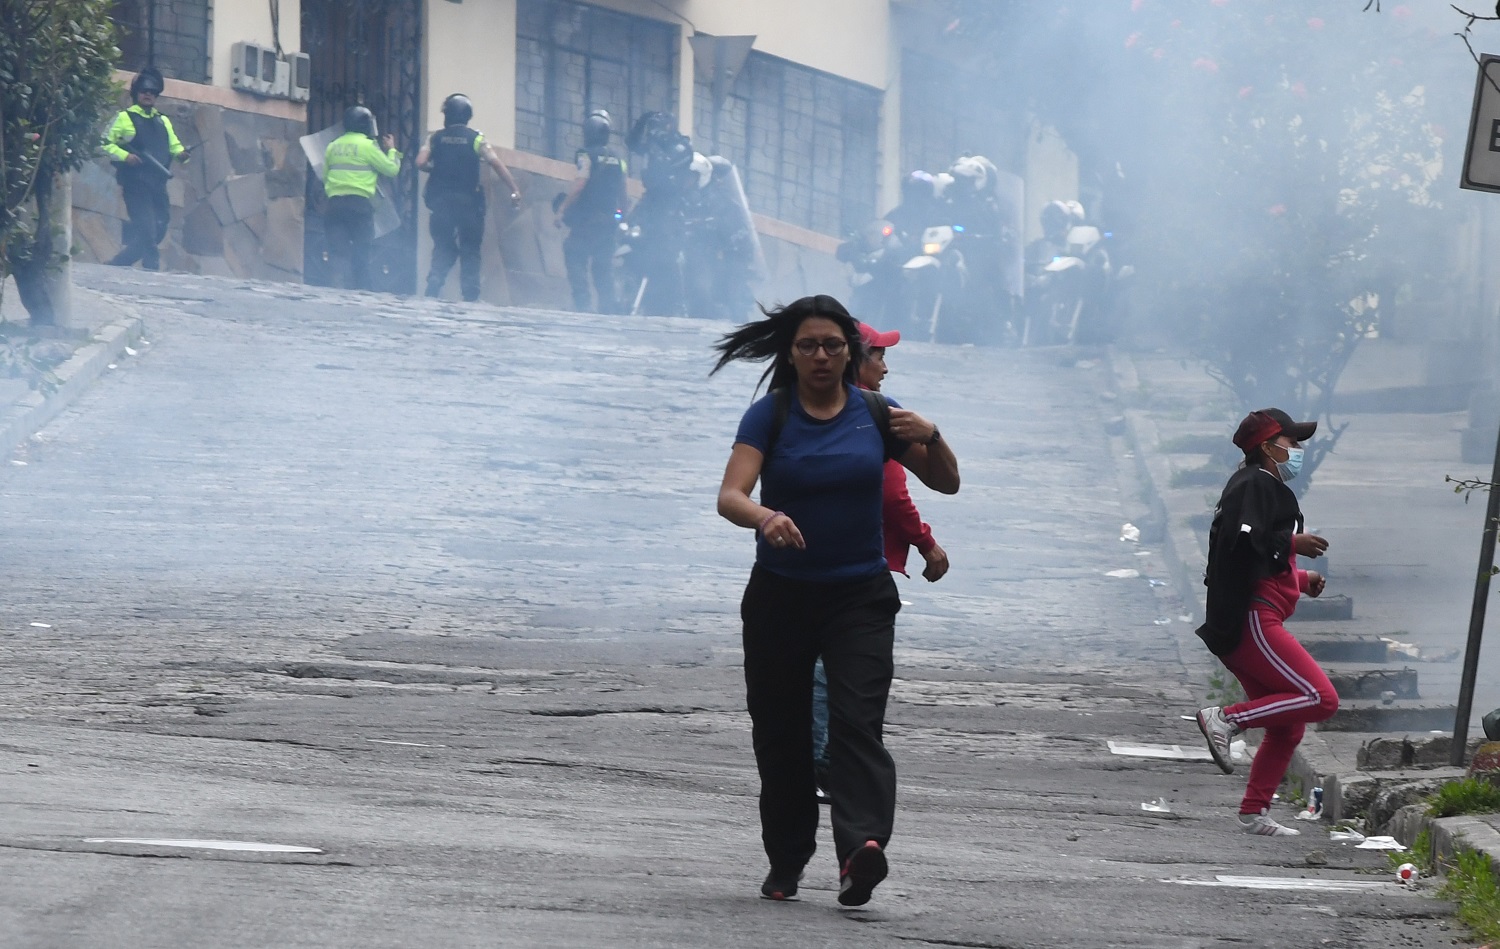 La Policía descargó cerca de 39.000 municiones no letales, entre bombas lacrimógenas y perdigones, para contener las protestas de octubre de 2019 | Foto: Carlos Granja / EL UNVIERSO.